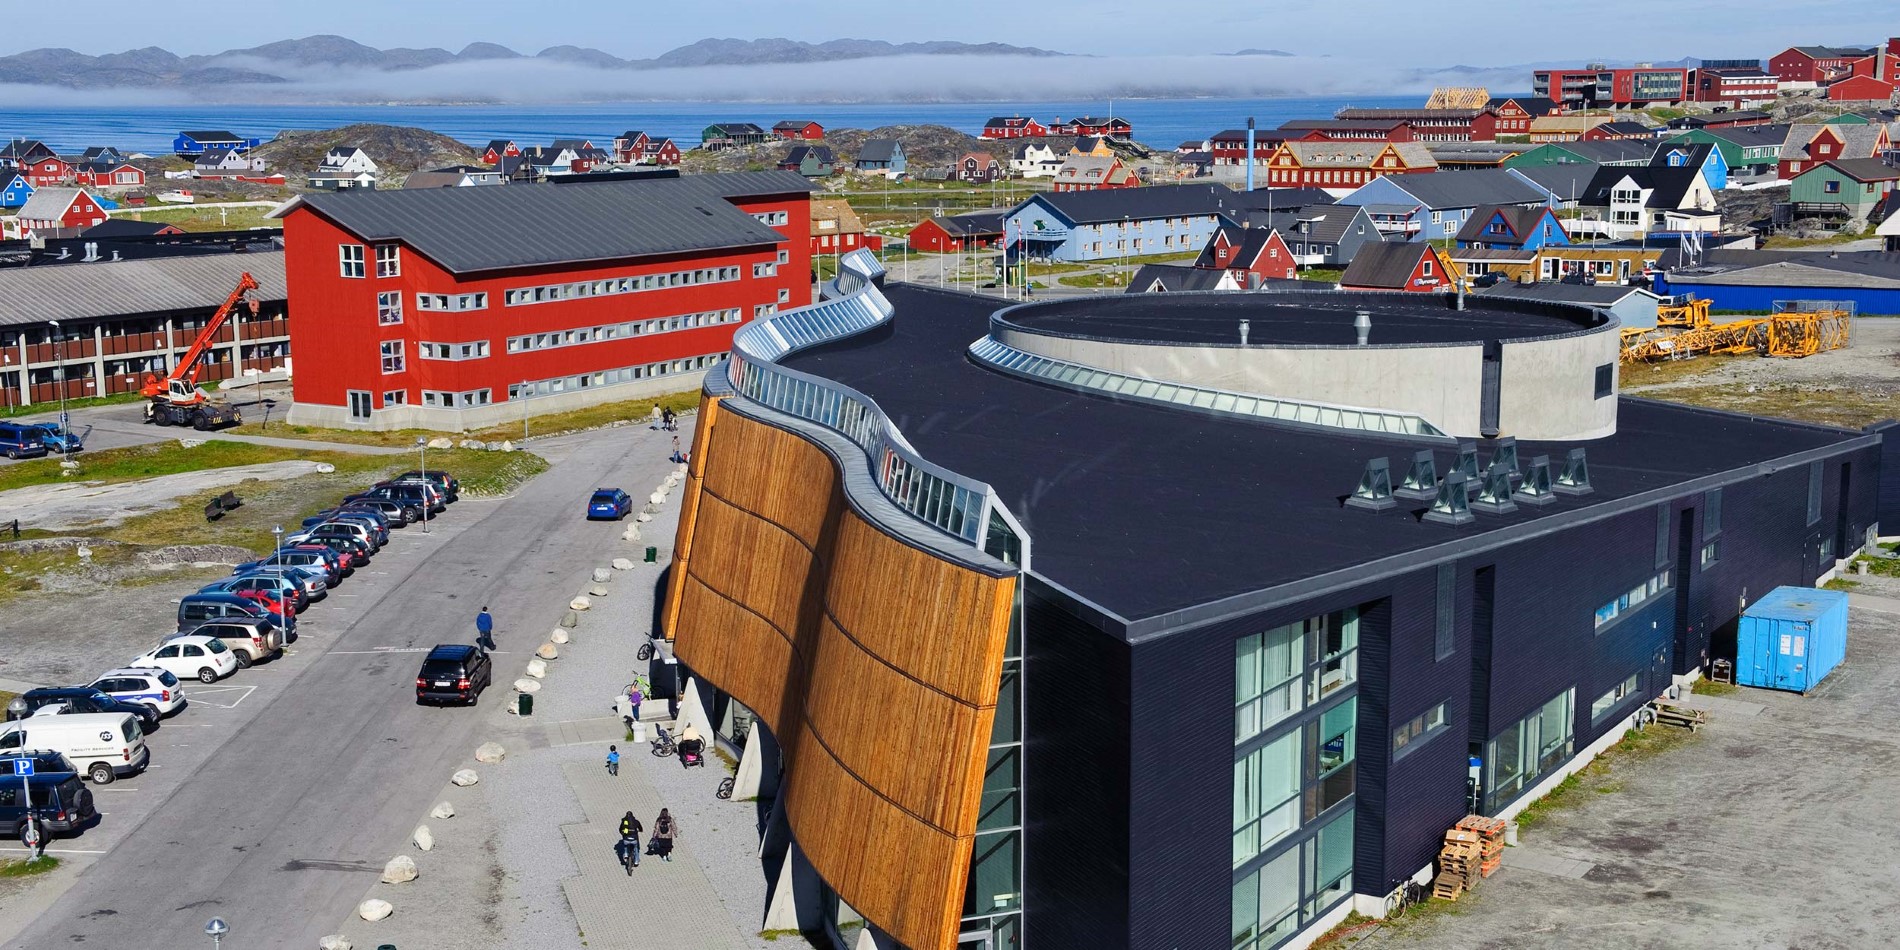 Nuuk Culture Centre "Katuaq" Grönlands arkitektur